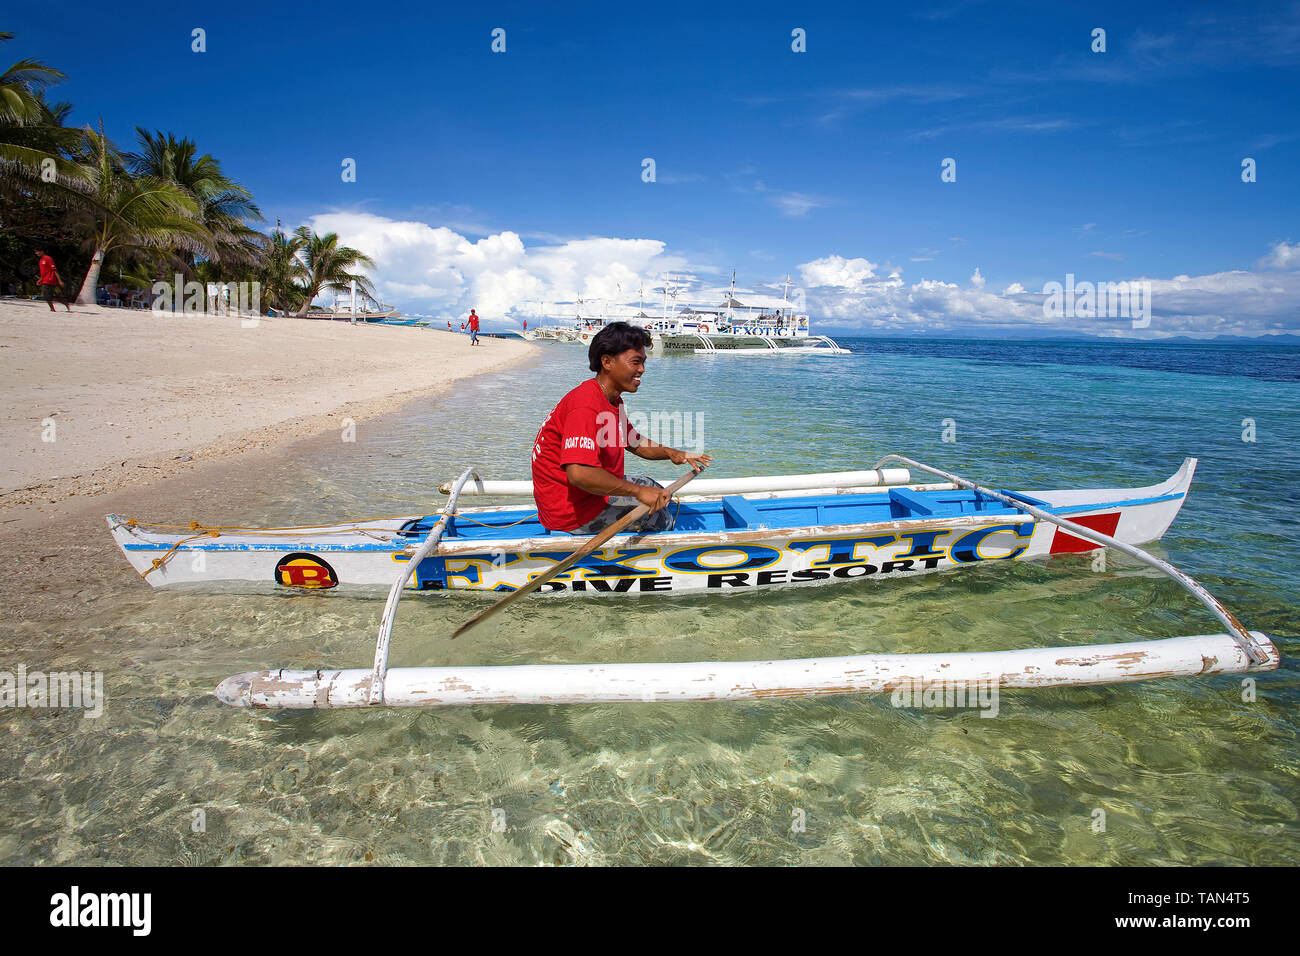 Phillipin à un petit bateau outrigger à Bounty beach, Malapascua Island, Cebu, Philippines Banque D'Images